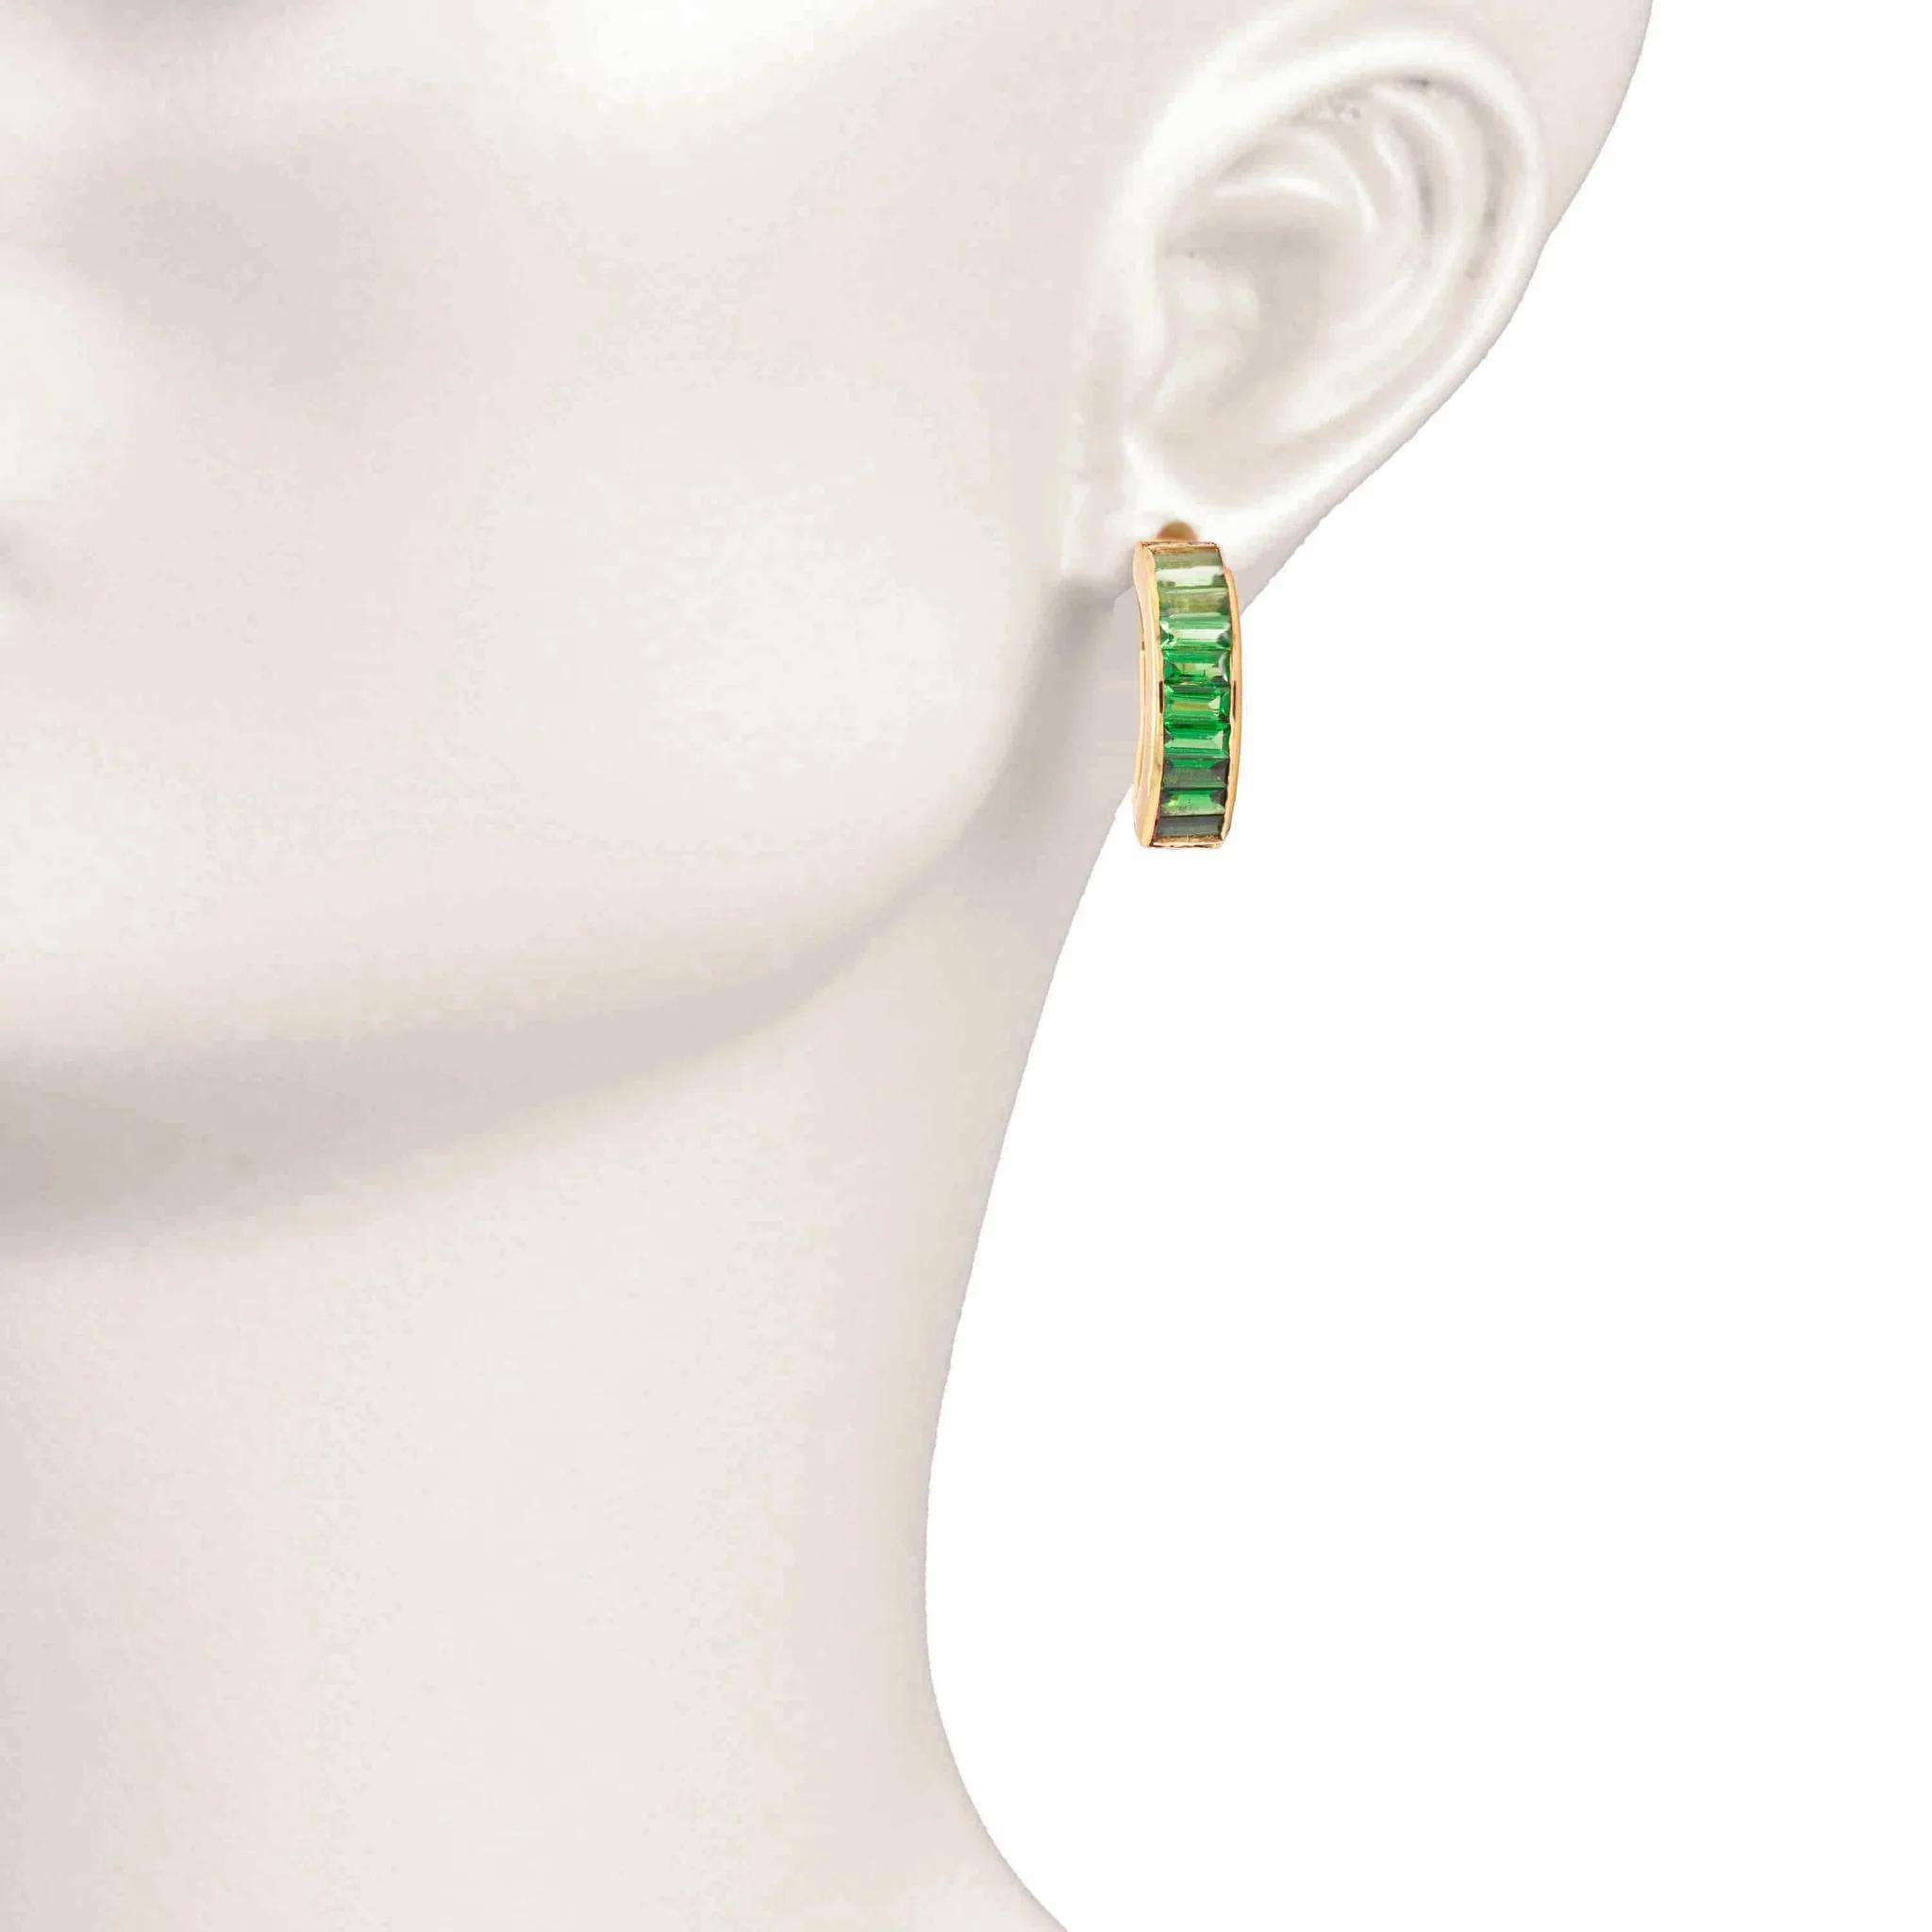 Les boucles d'oreilles en tsavorite verte rehaussent l'élégance en alliant allure naturelle et sophistication contemporaine. Ces boucles d'oreilles présentent une barre élégante ornée de pierres précieuses en tsavorite d'un vert éclatant, capturant